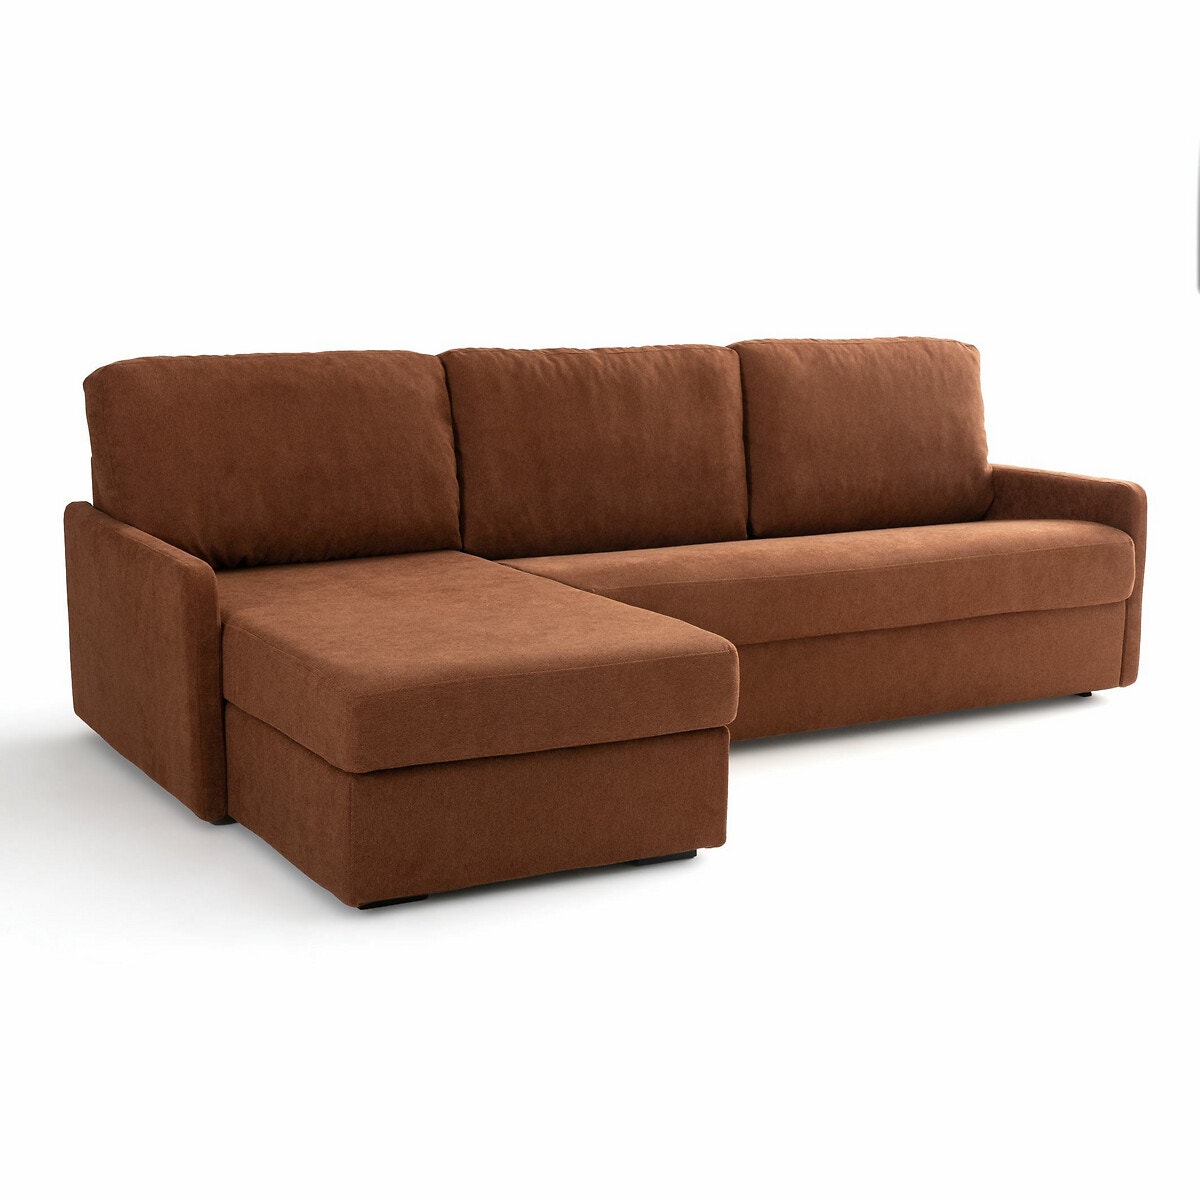 Σπίτι > Έπιπλα > Καθιστικό > Καναπέδες > Γωνιακοί καναπέδες Γωνιακός καναπές-κρεβάτι με ανάγλυφη ταπετσαρία και στρώμα τεχνολογίας Bultex Μ160xΠ256xΥ90cm